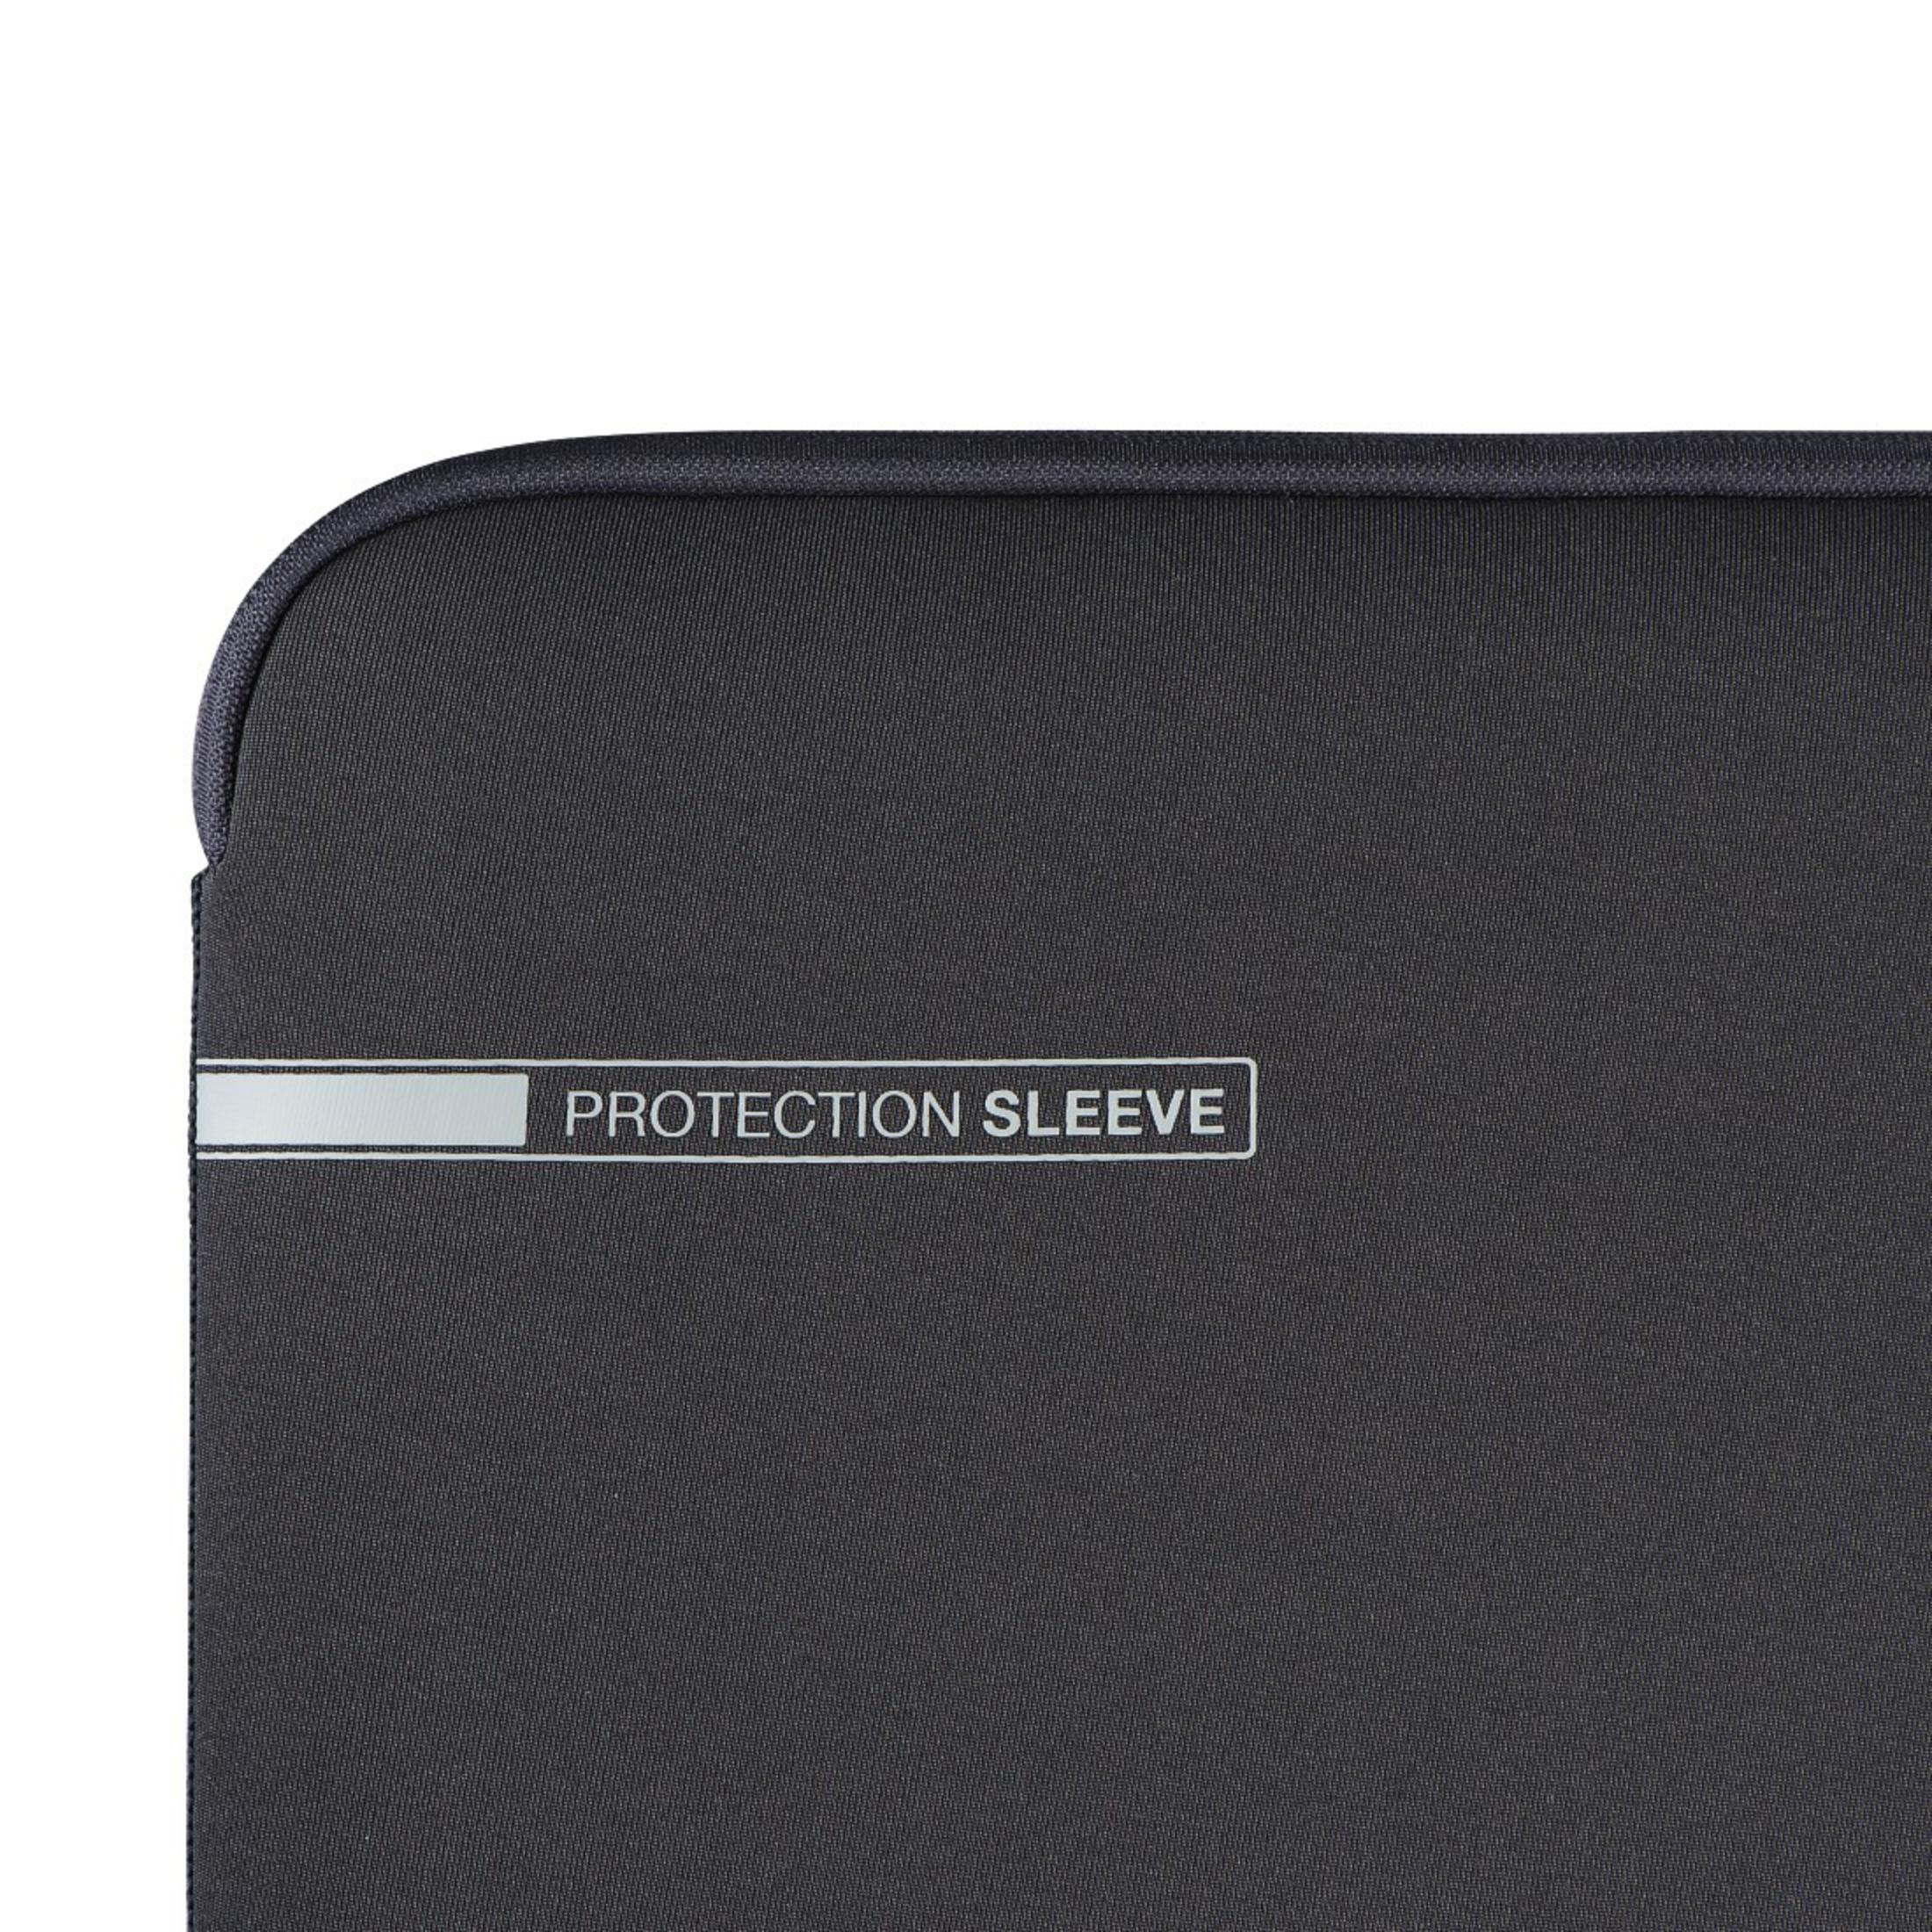 HAMA 101549 Universal NB-SLE Sleeve Notebooktasche Neopren, GR für 13.3 Grau/Rot NEO